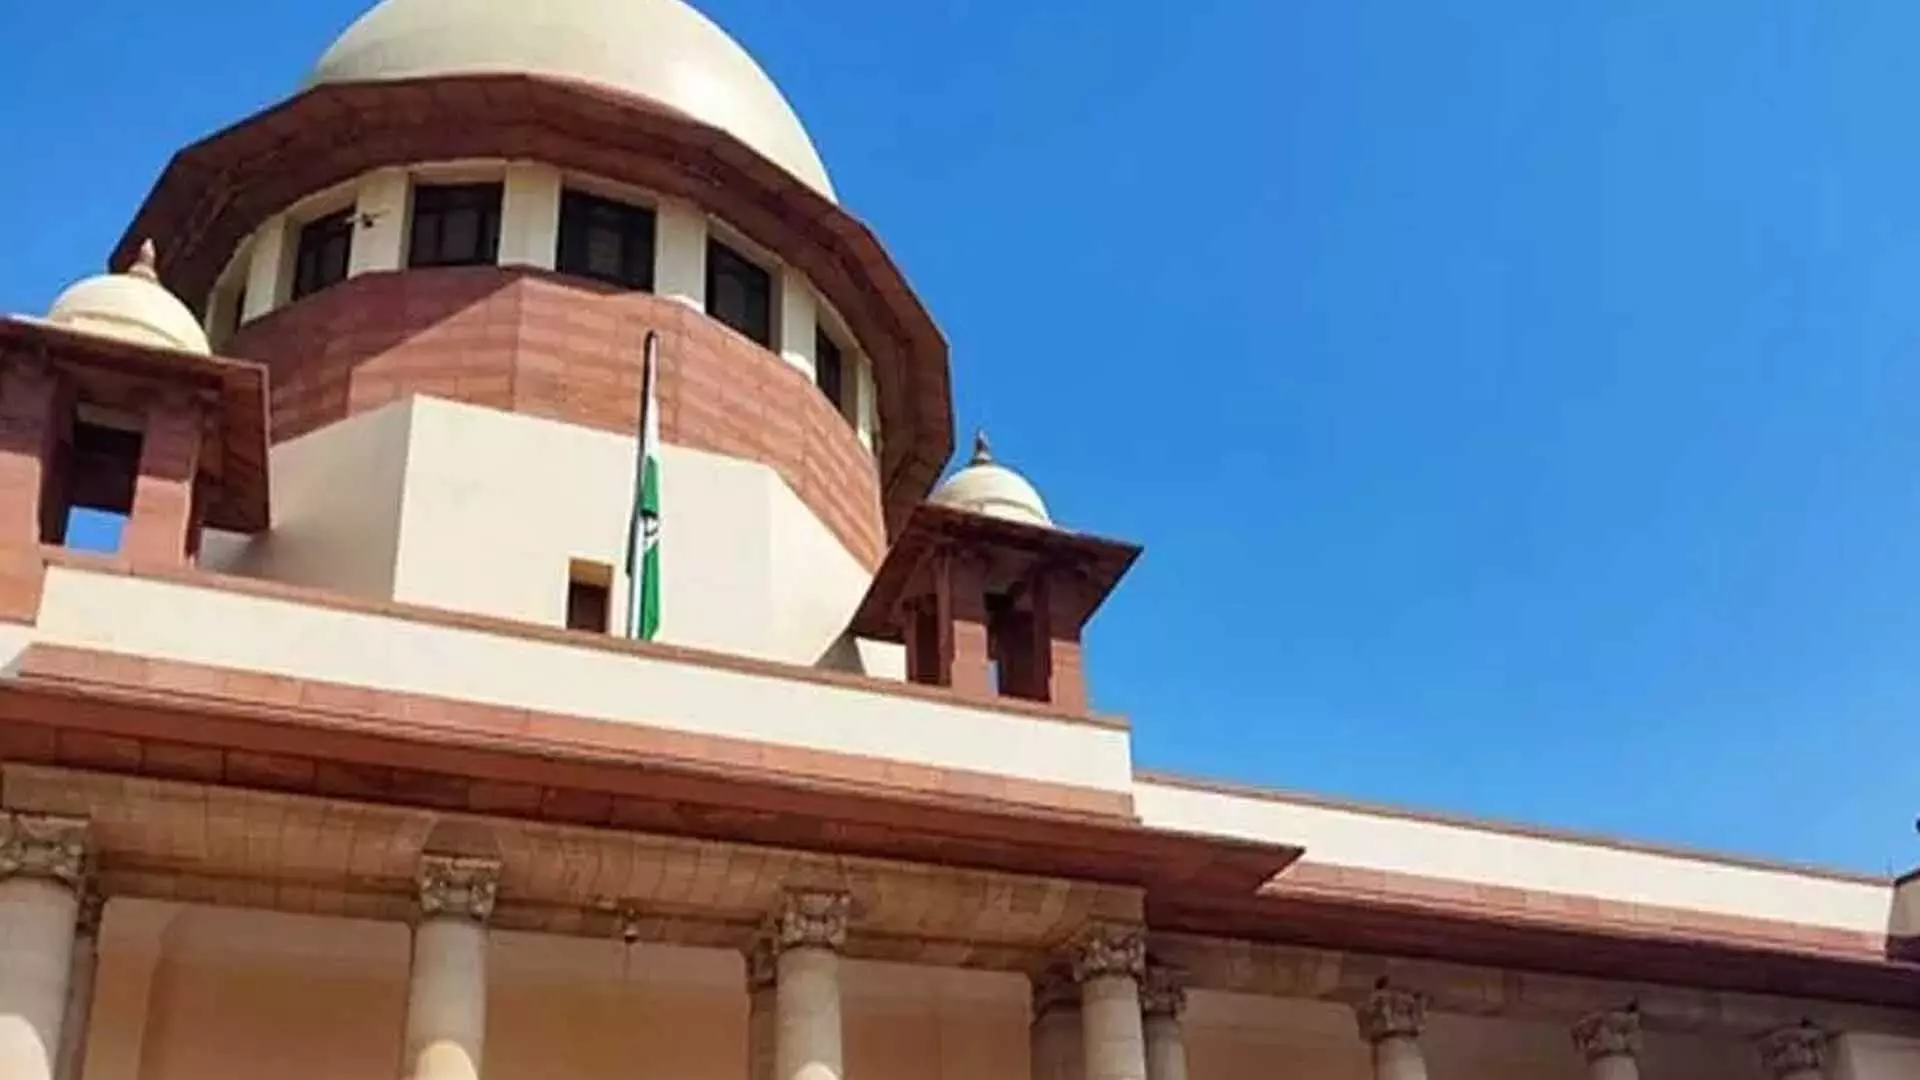 Supreme Court कॉलेजियम मद्रास हाईकोर्ट के एसीजे को शीर्ष अदालत में पदोन्नत करने की सिफारिश की